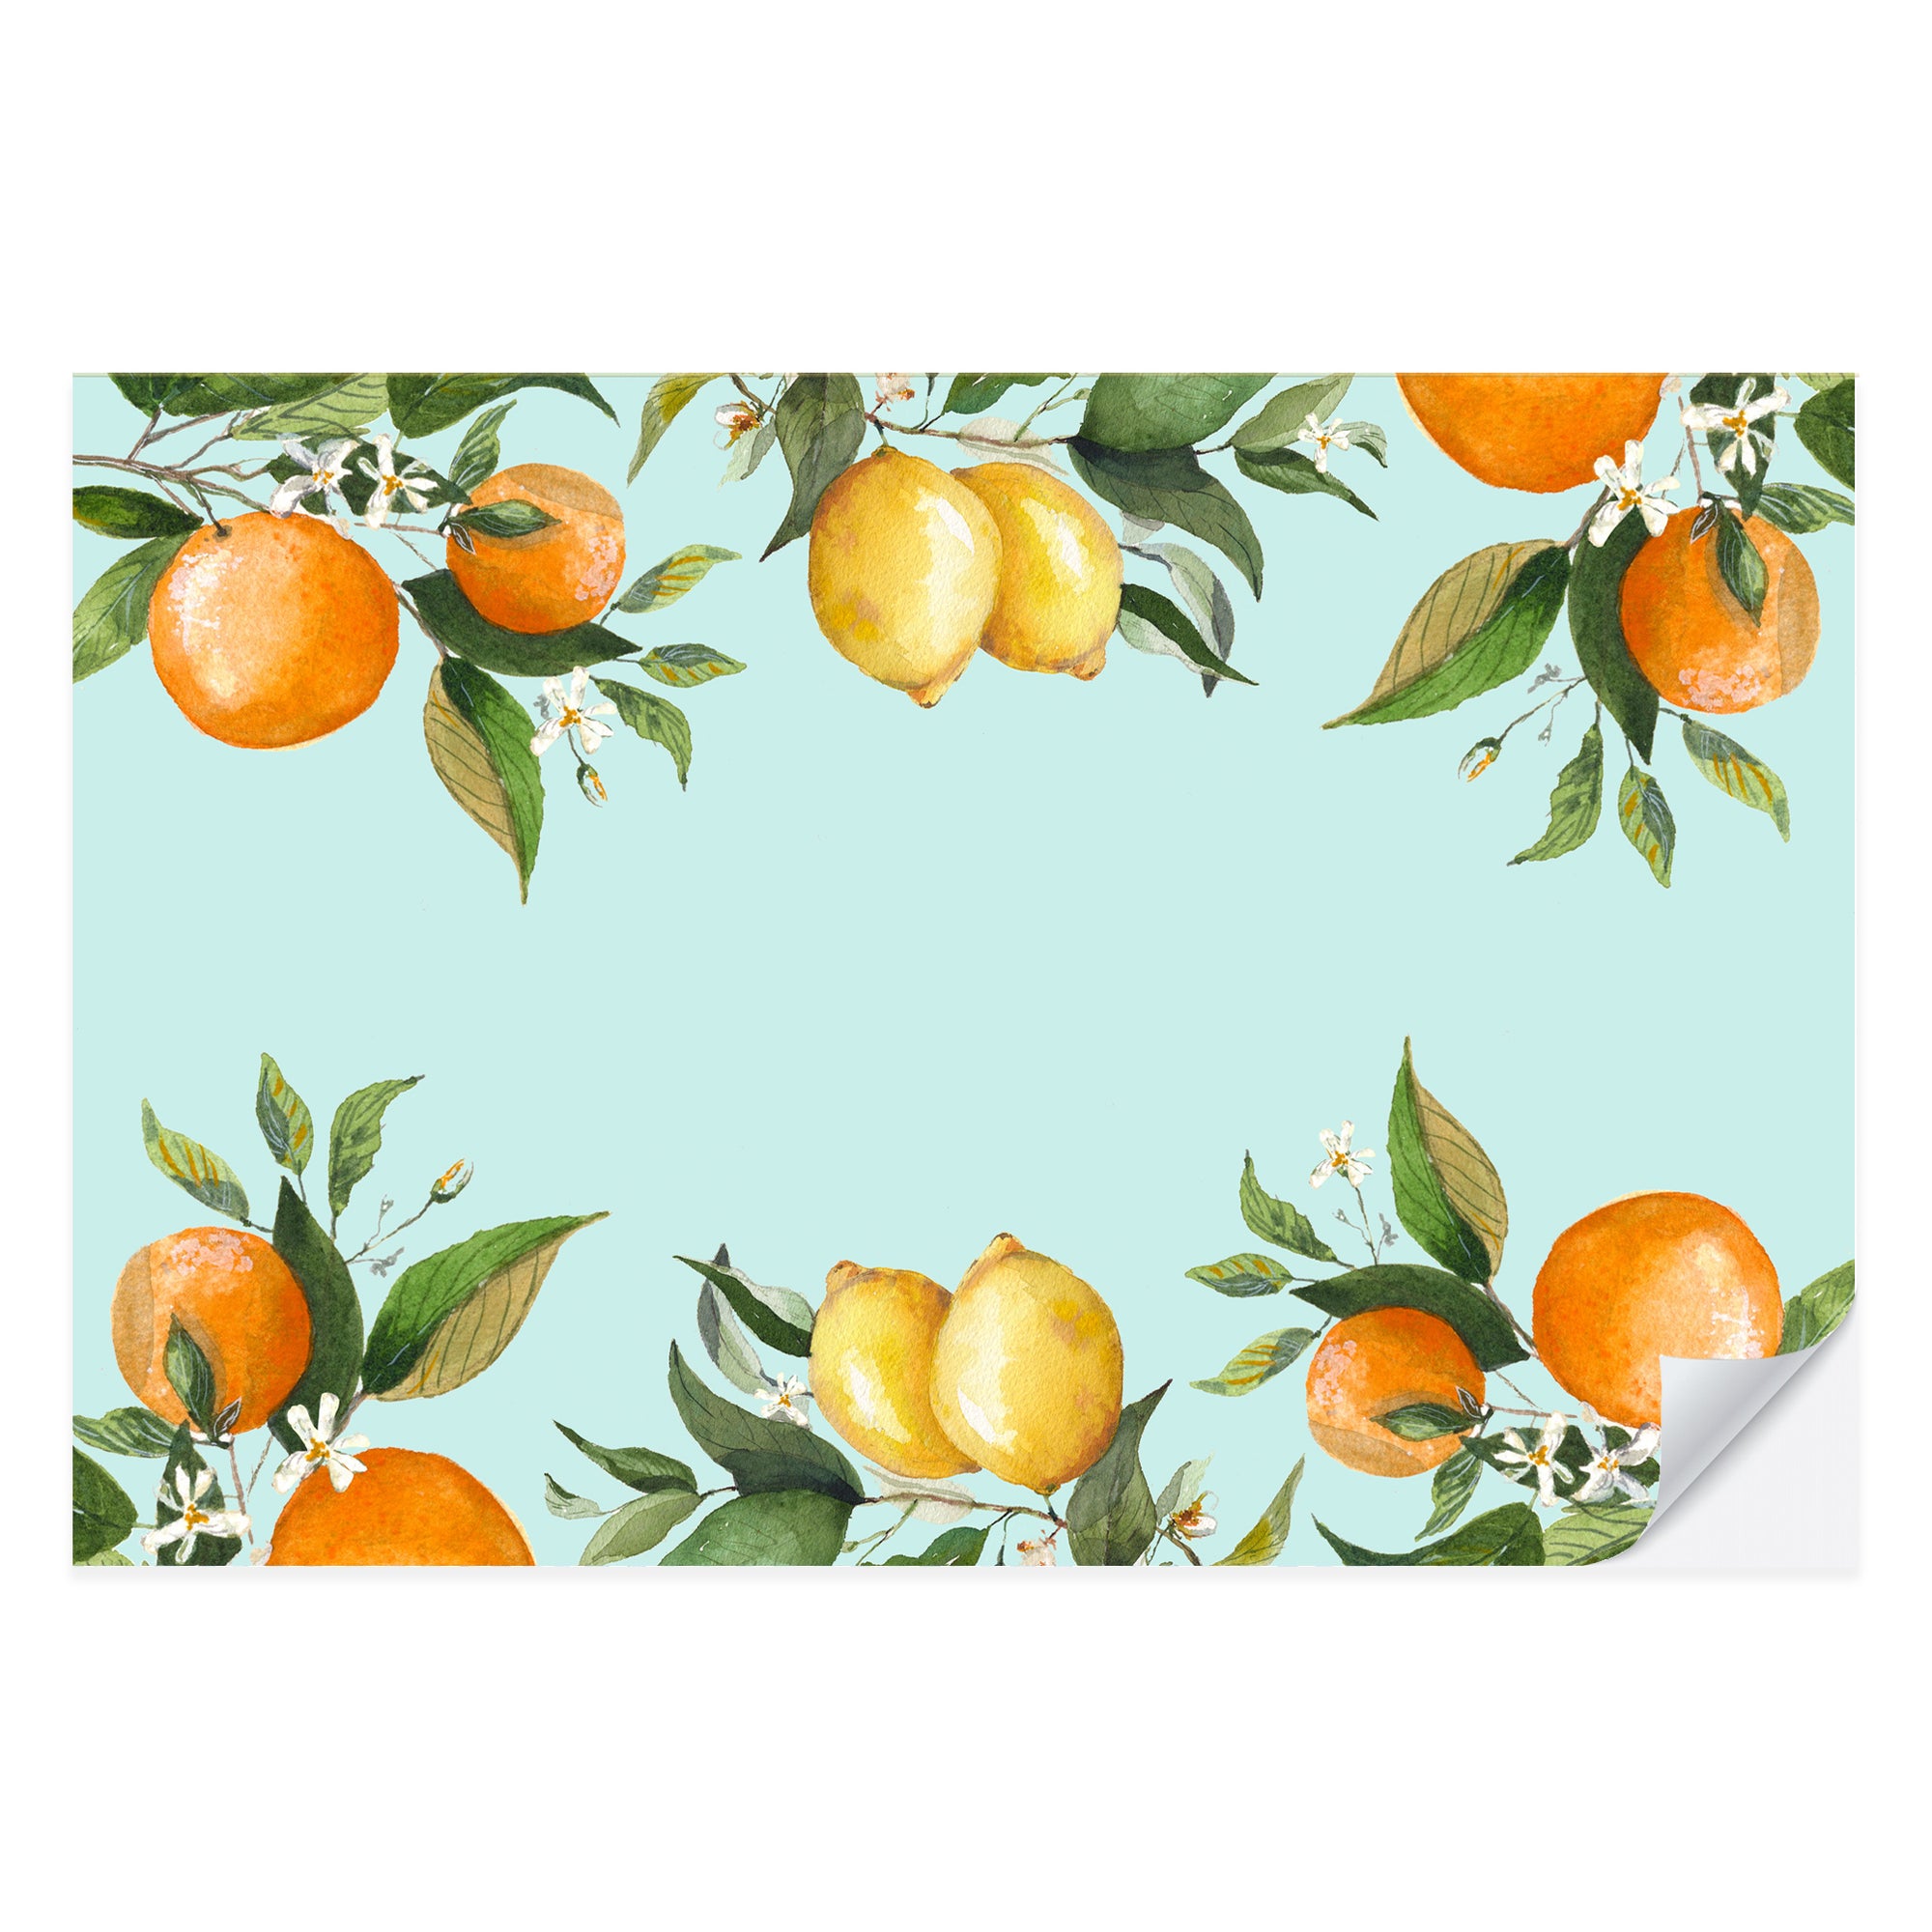 Zesty Citrus Placemat Pad